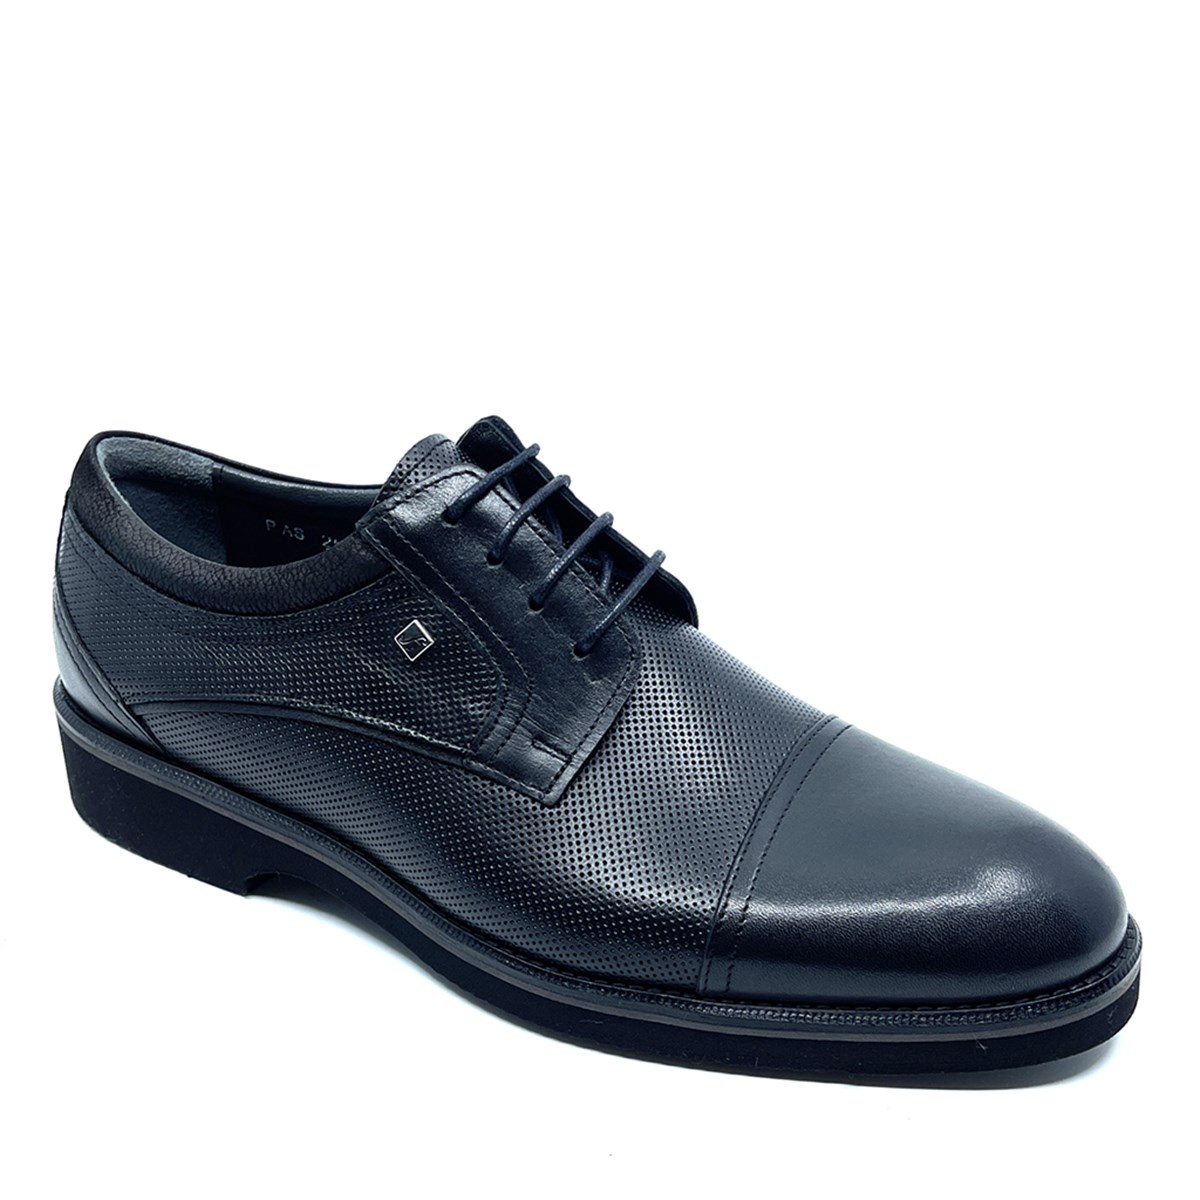 Erkek Hakiki Deri Günlük Klasik Ayakkabı, Renk: Siyah, Beden: 40